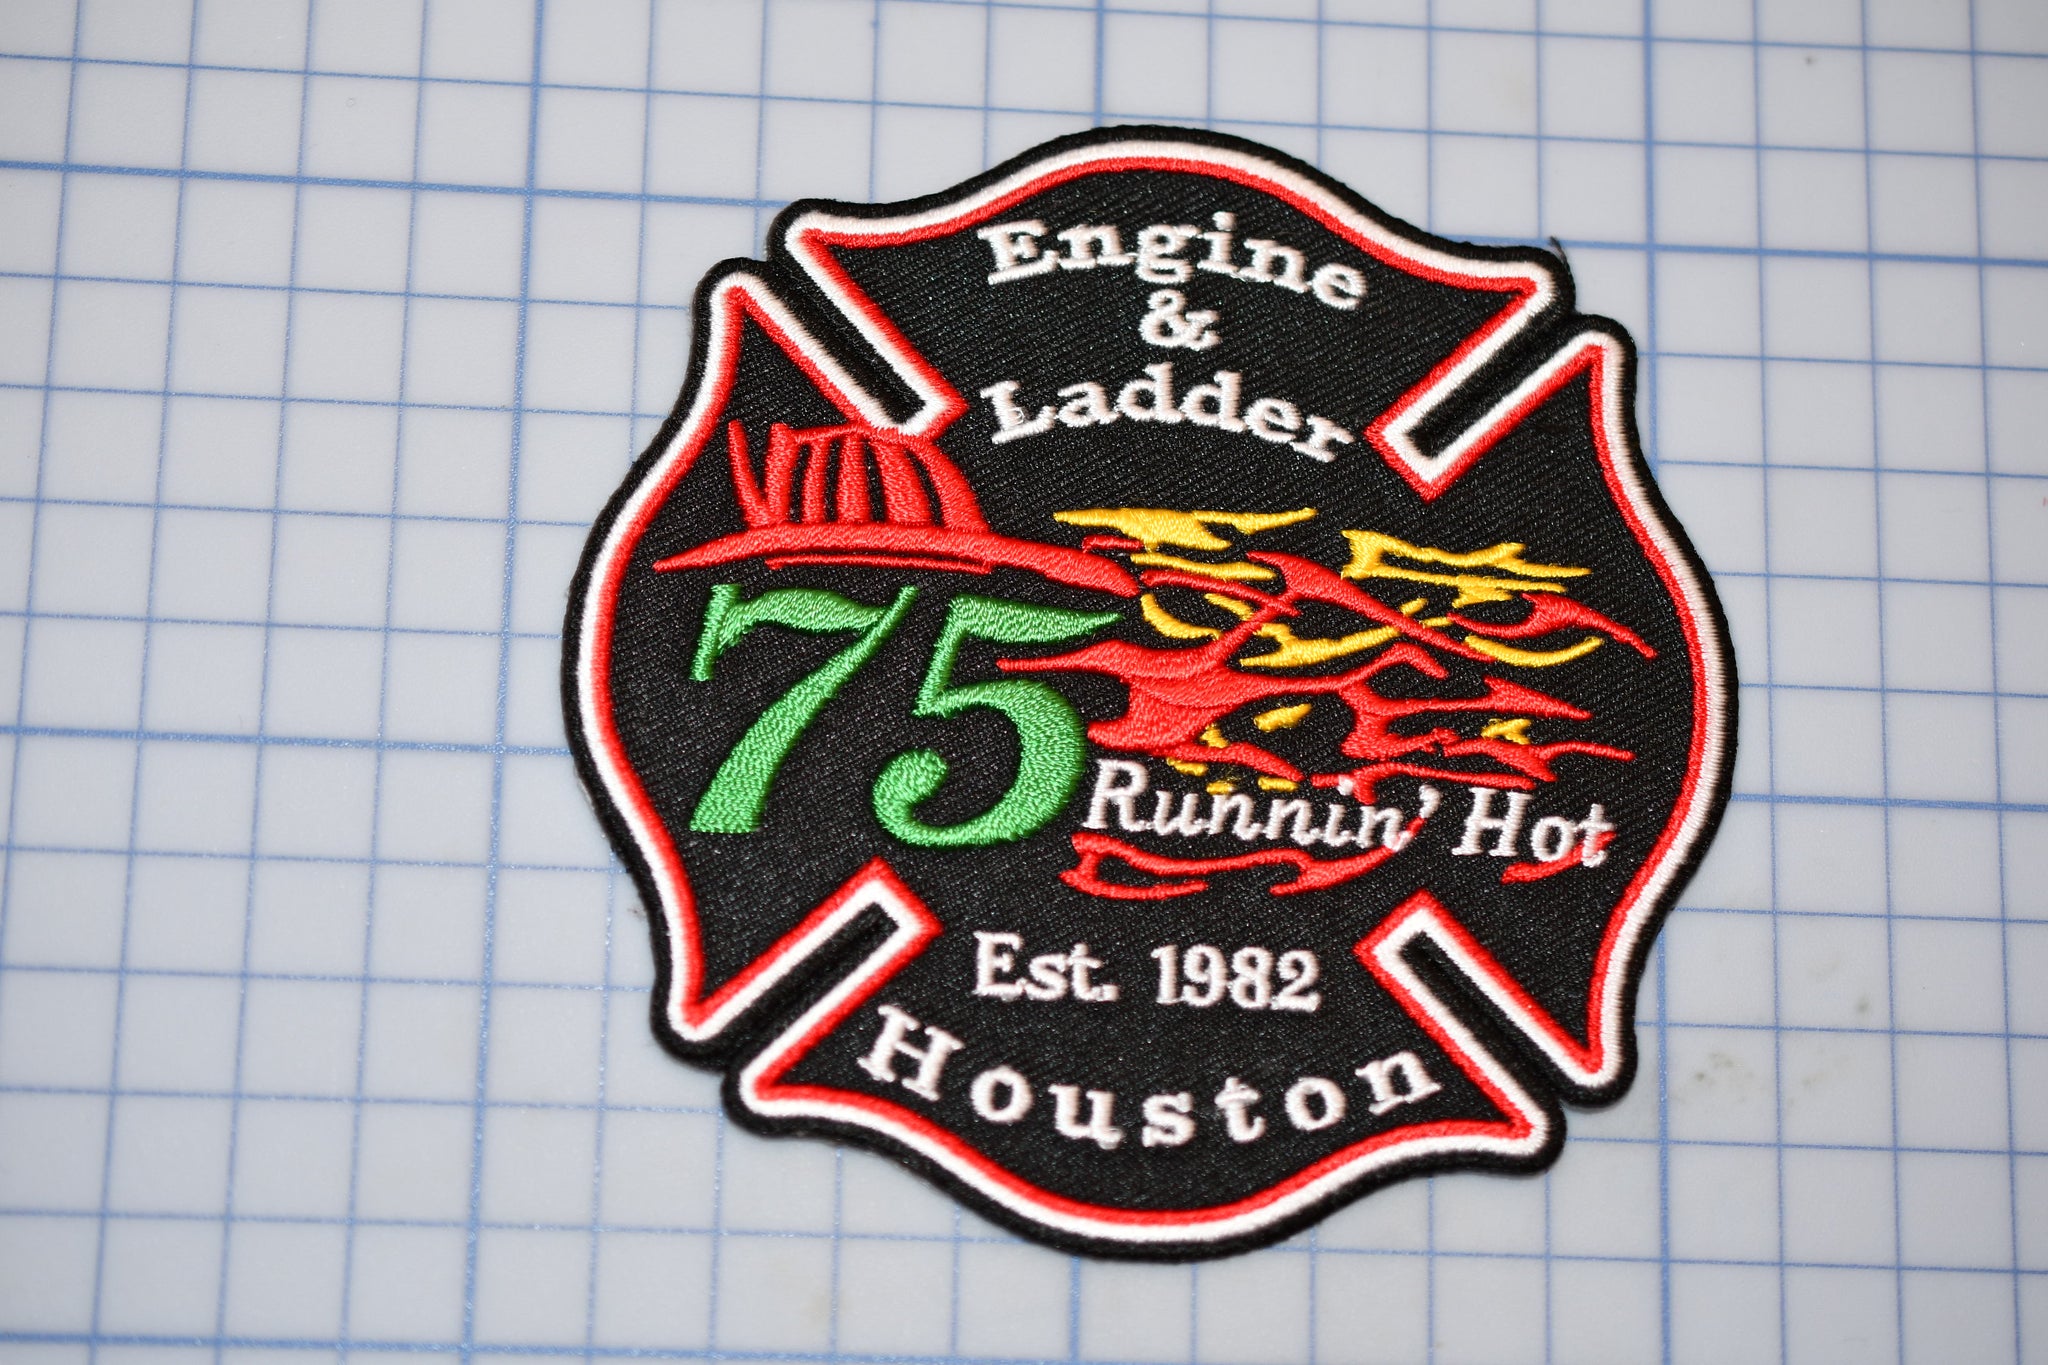 Houston Texas Fire Department Engine Ladder 75 "Runnin' Hot" Patch (B19)